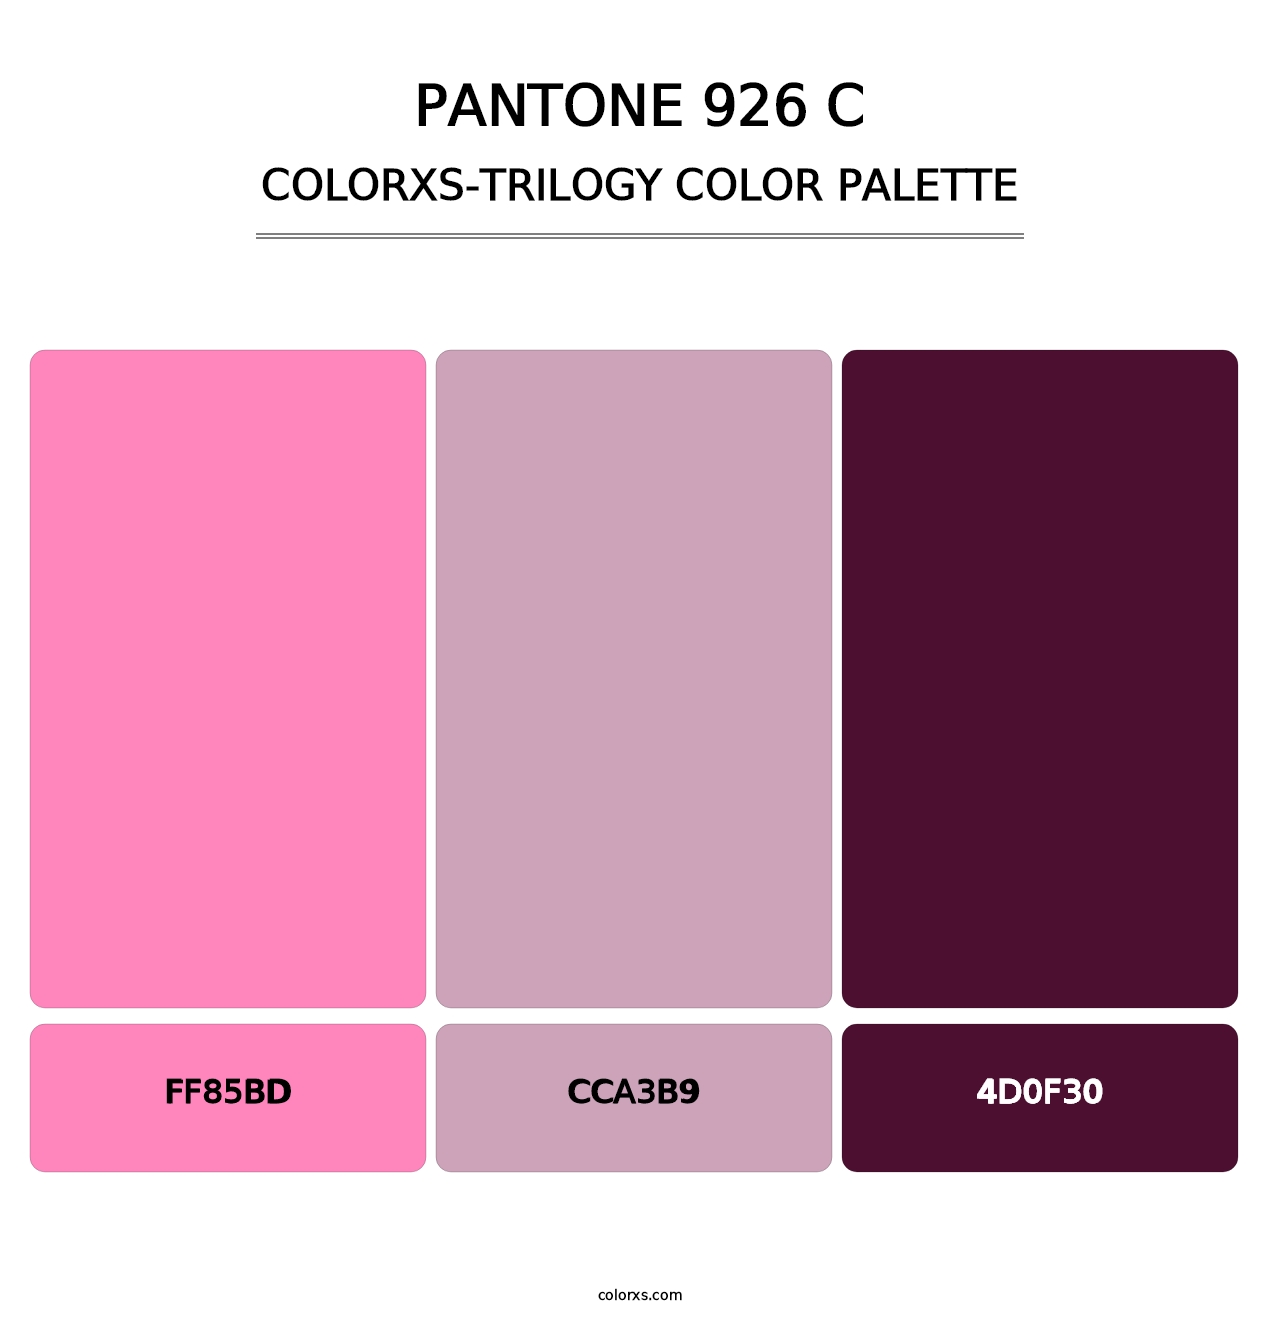 PANTONE 926 C - Colorxs Trilogy Palette